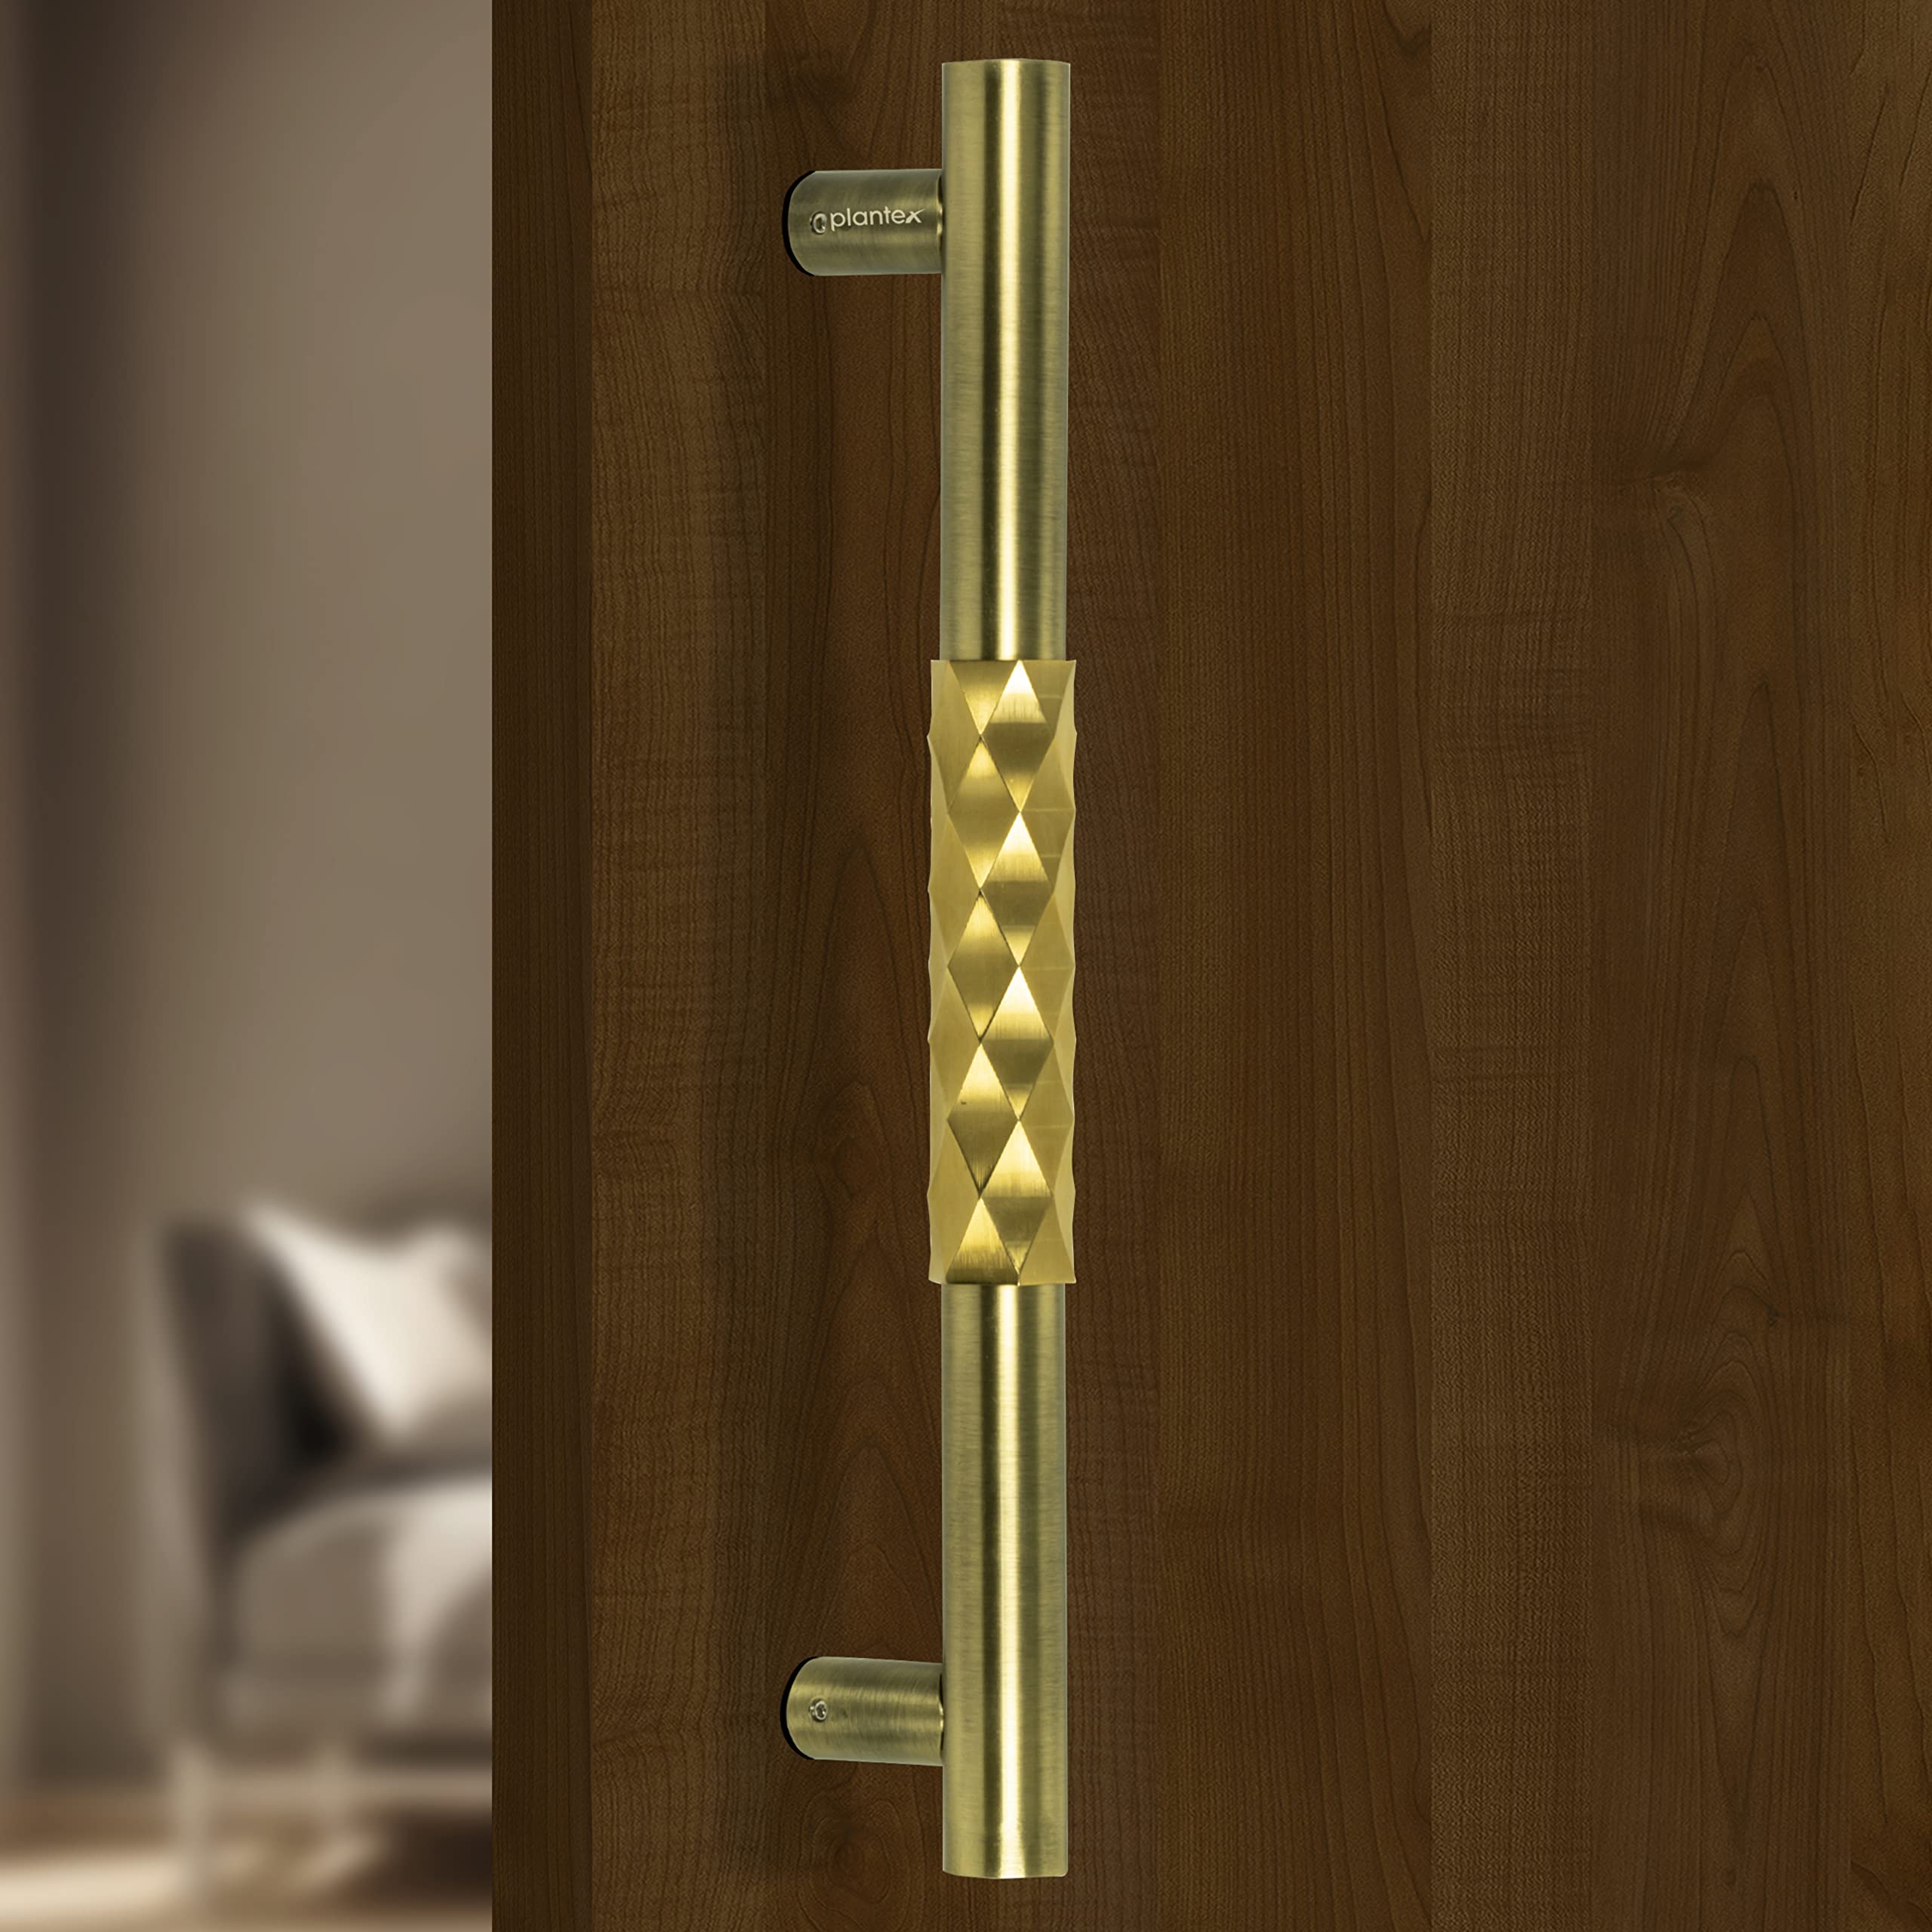 Plantex Aura Door Handle/Door & Home Decor/14 Inch Main Door Handle/Door Pull Push Handle – Pack of 1 (299,Brass Antique and Gold PVD Finish)